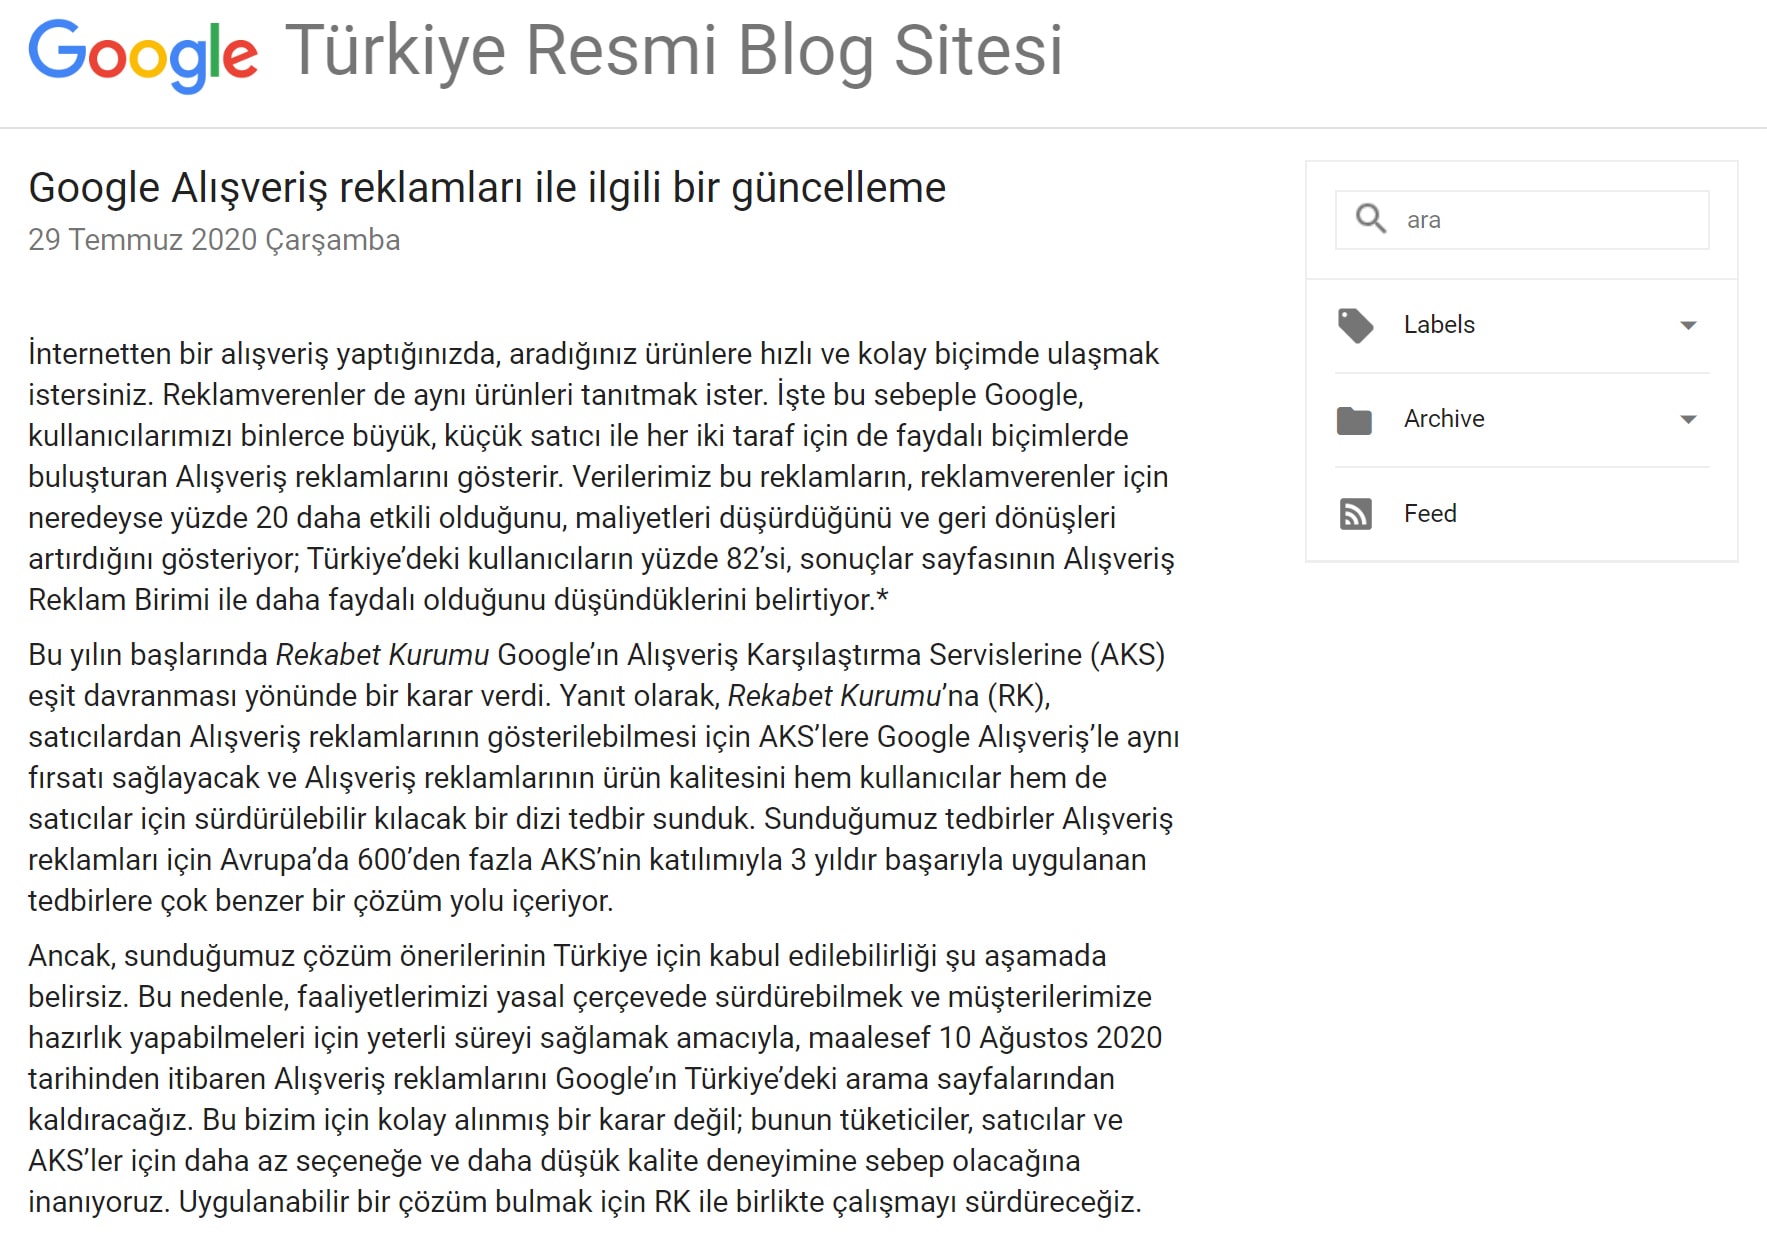 Google-ın Turkiye kararı